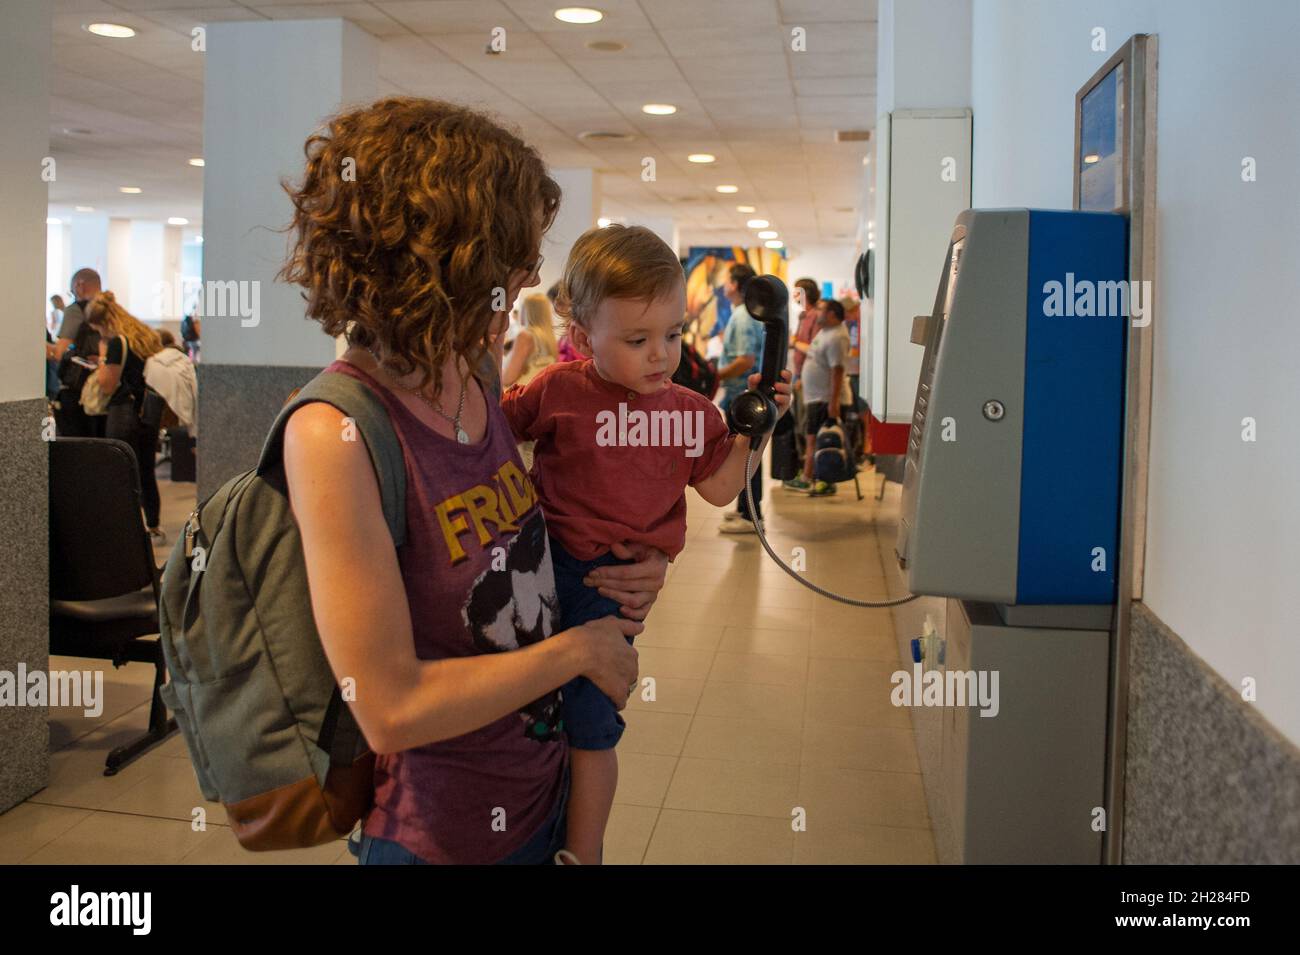 MAR DEL PLATA, ARGENTINIEN - 28. Dez 2017: Eine Mutter hält ihren Sohn vor einem öffentlichen Telefon im Flughafen Astor Piazzolla in Mar del Plata, Argent Stockfoto